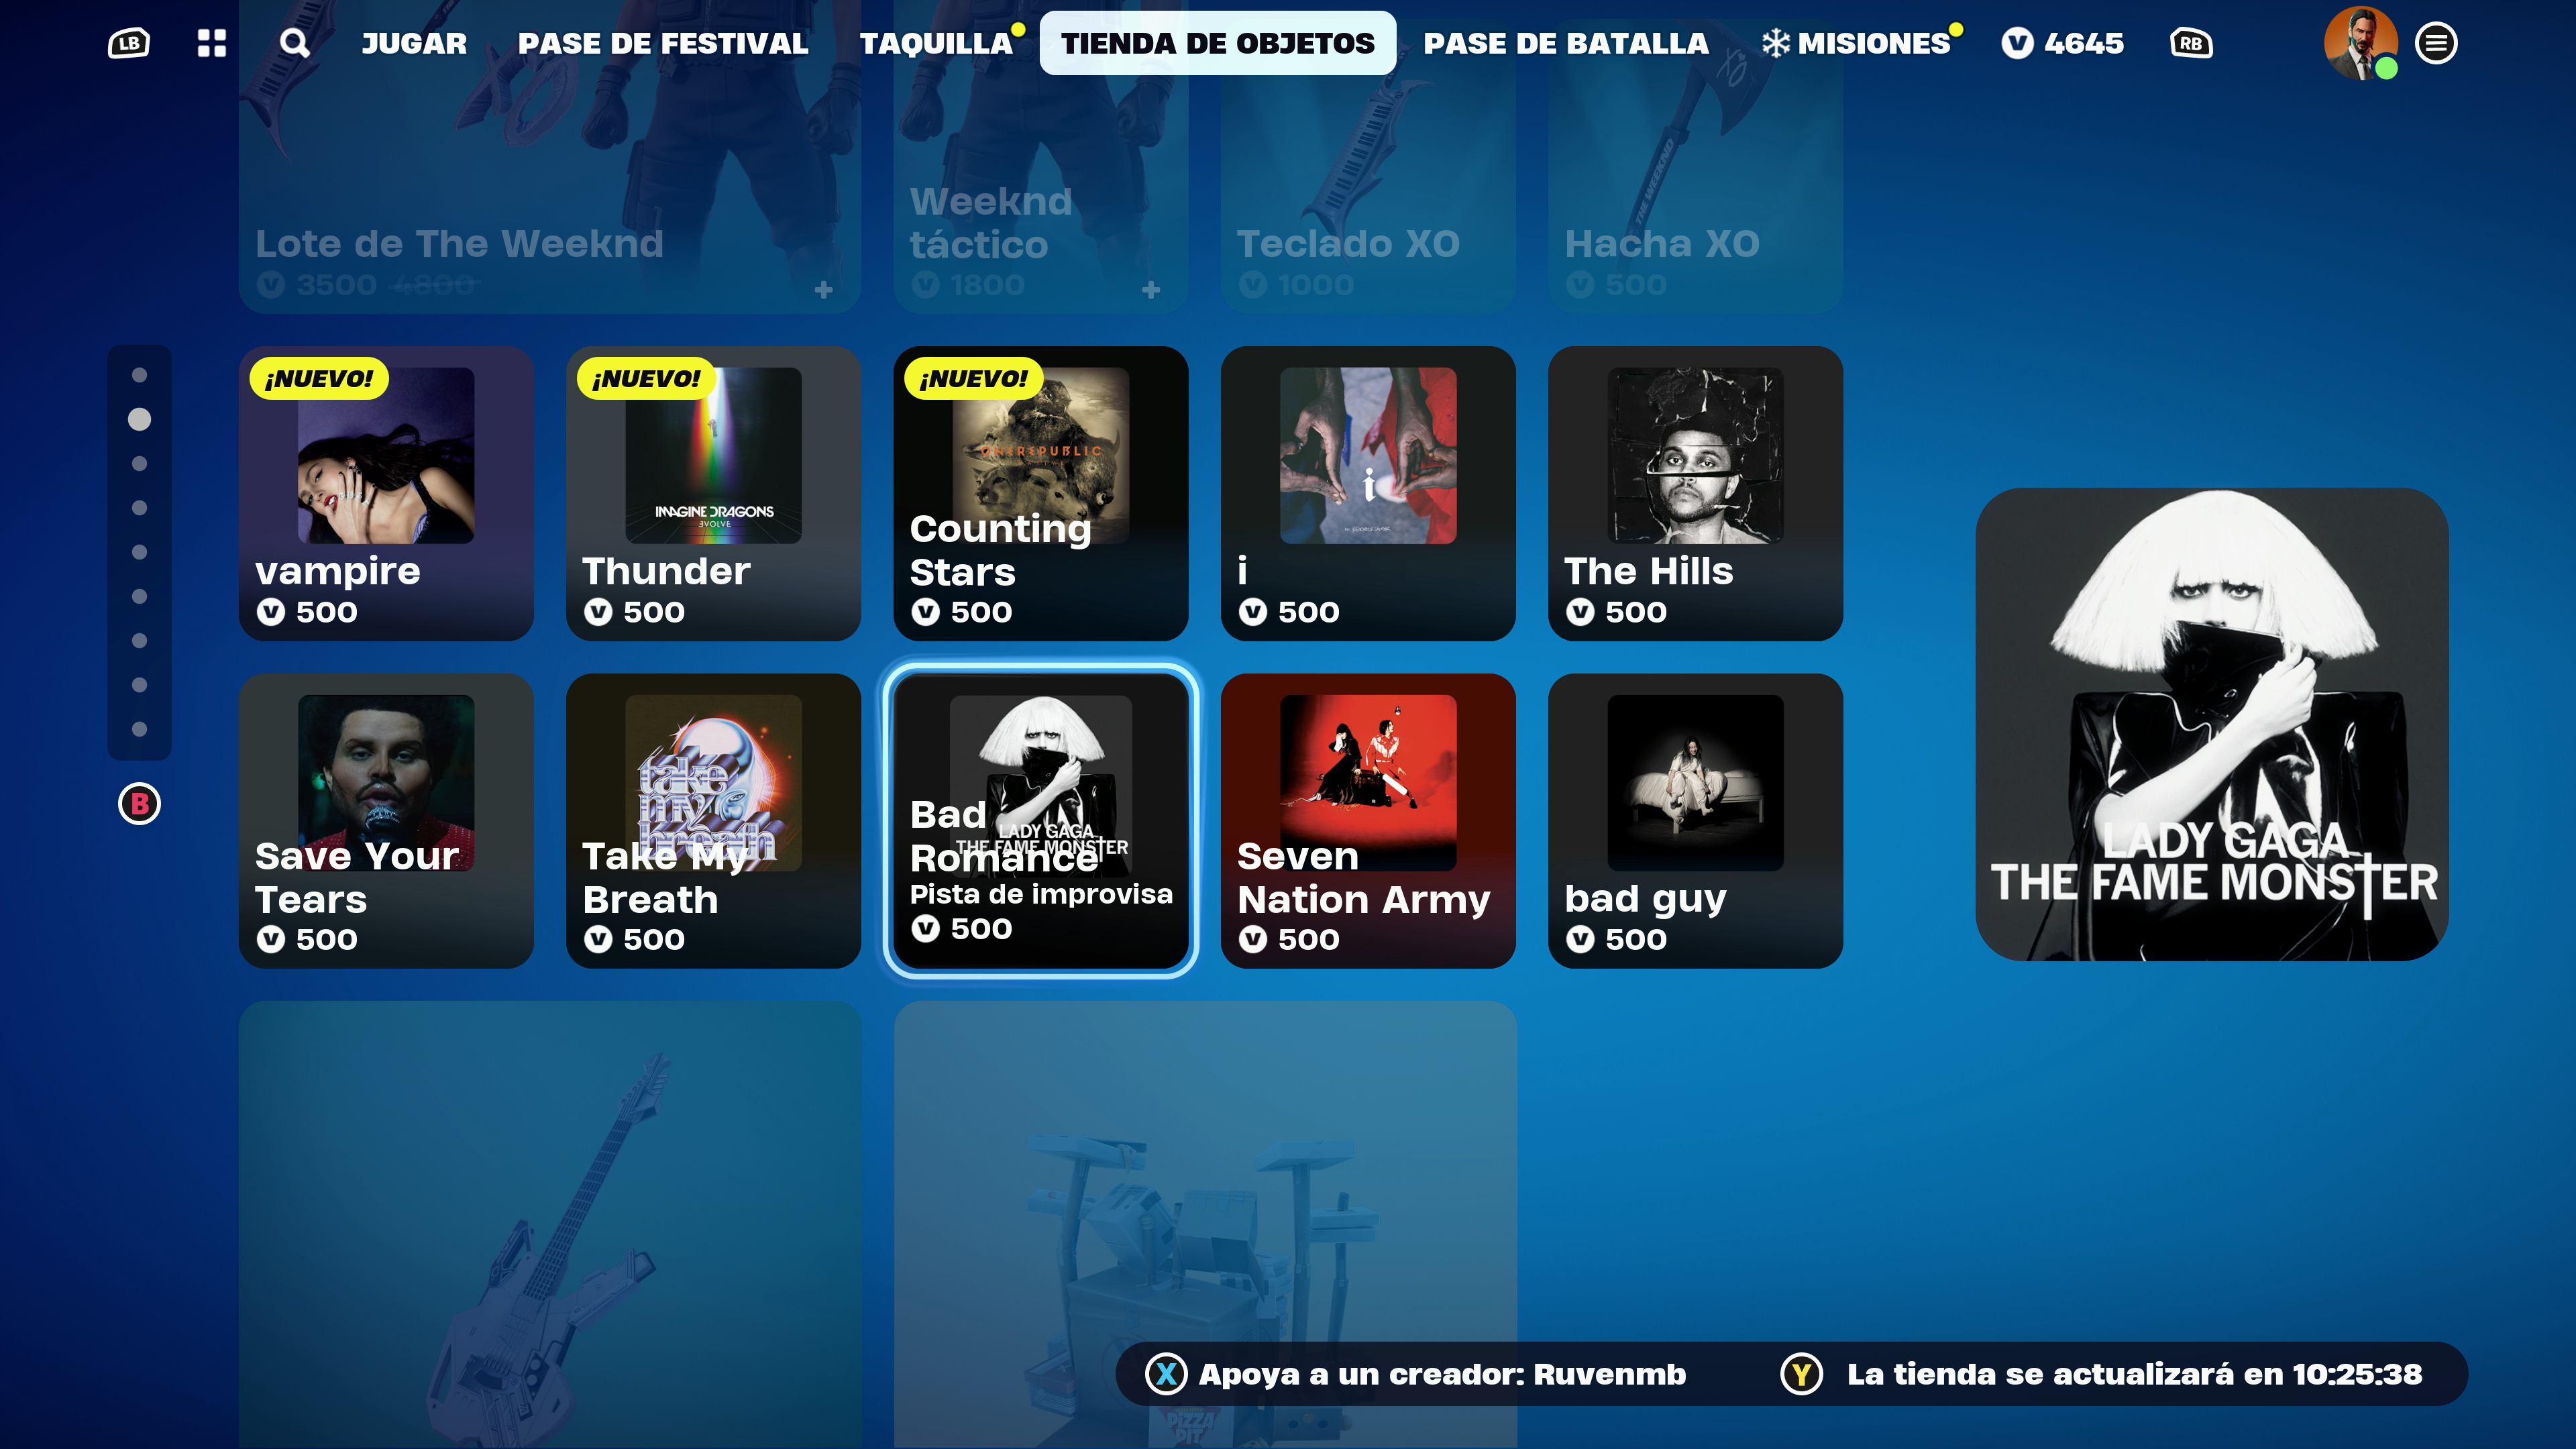 Fortnite Festival: jogo ganha modo Guitar Hero; entenda!